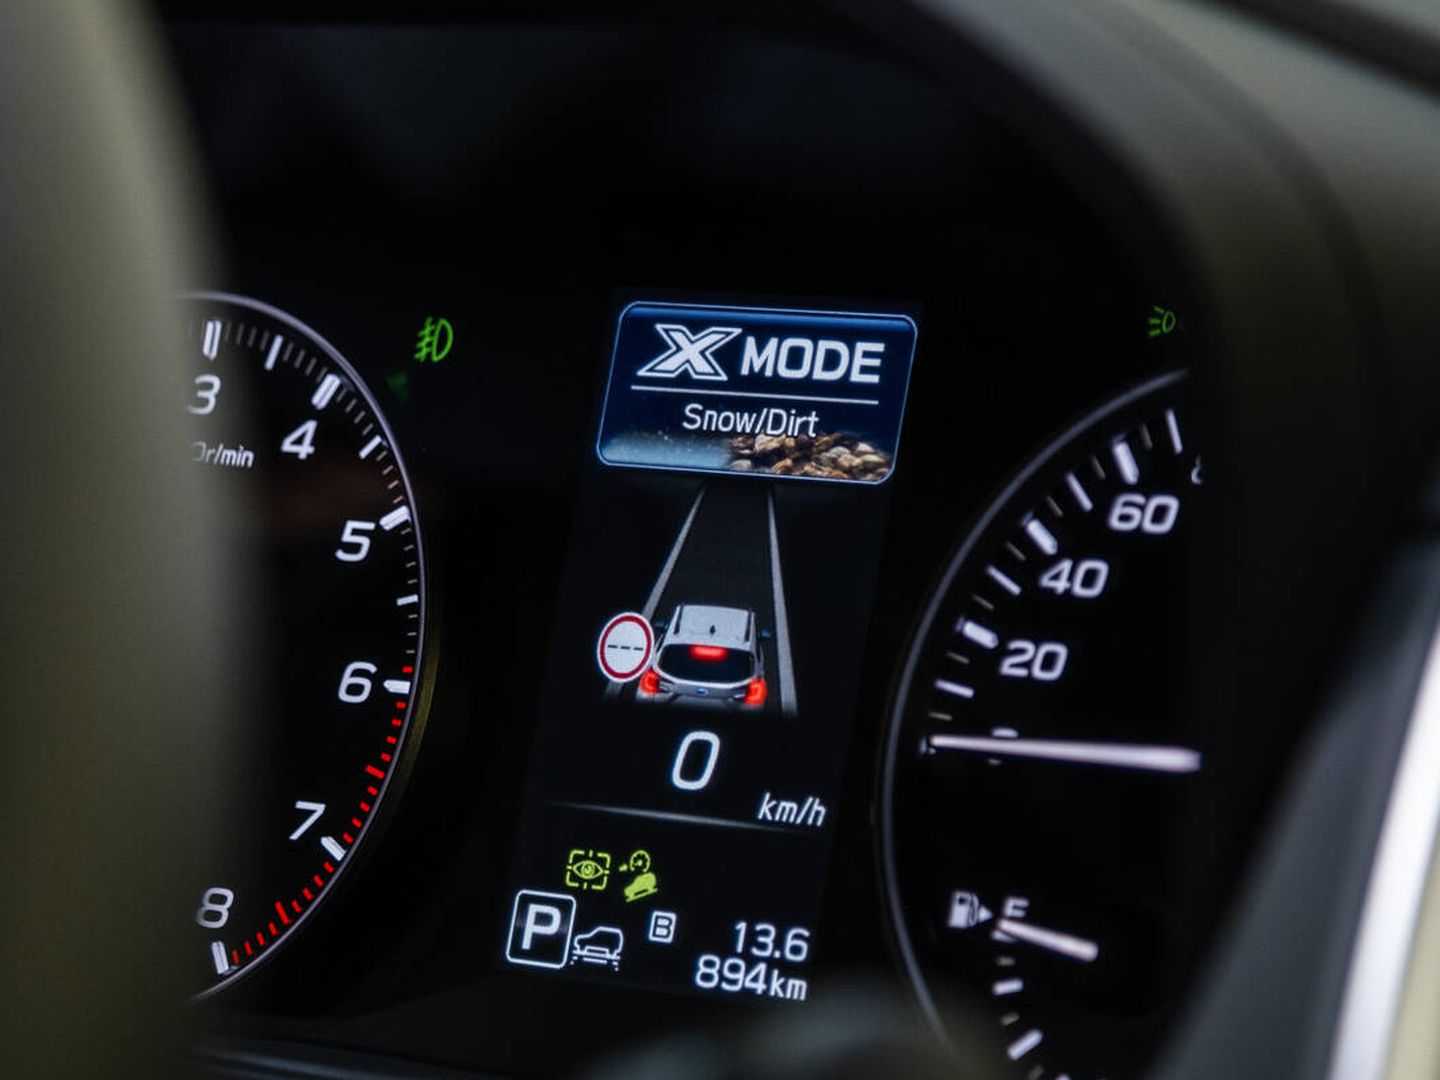 El X-Mode se ha mejorado, y ahora no se desactiva al engranar marcha atrás o pasar de 40 km/h.